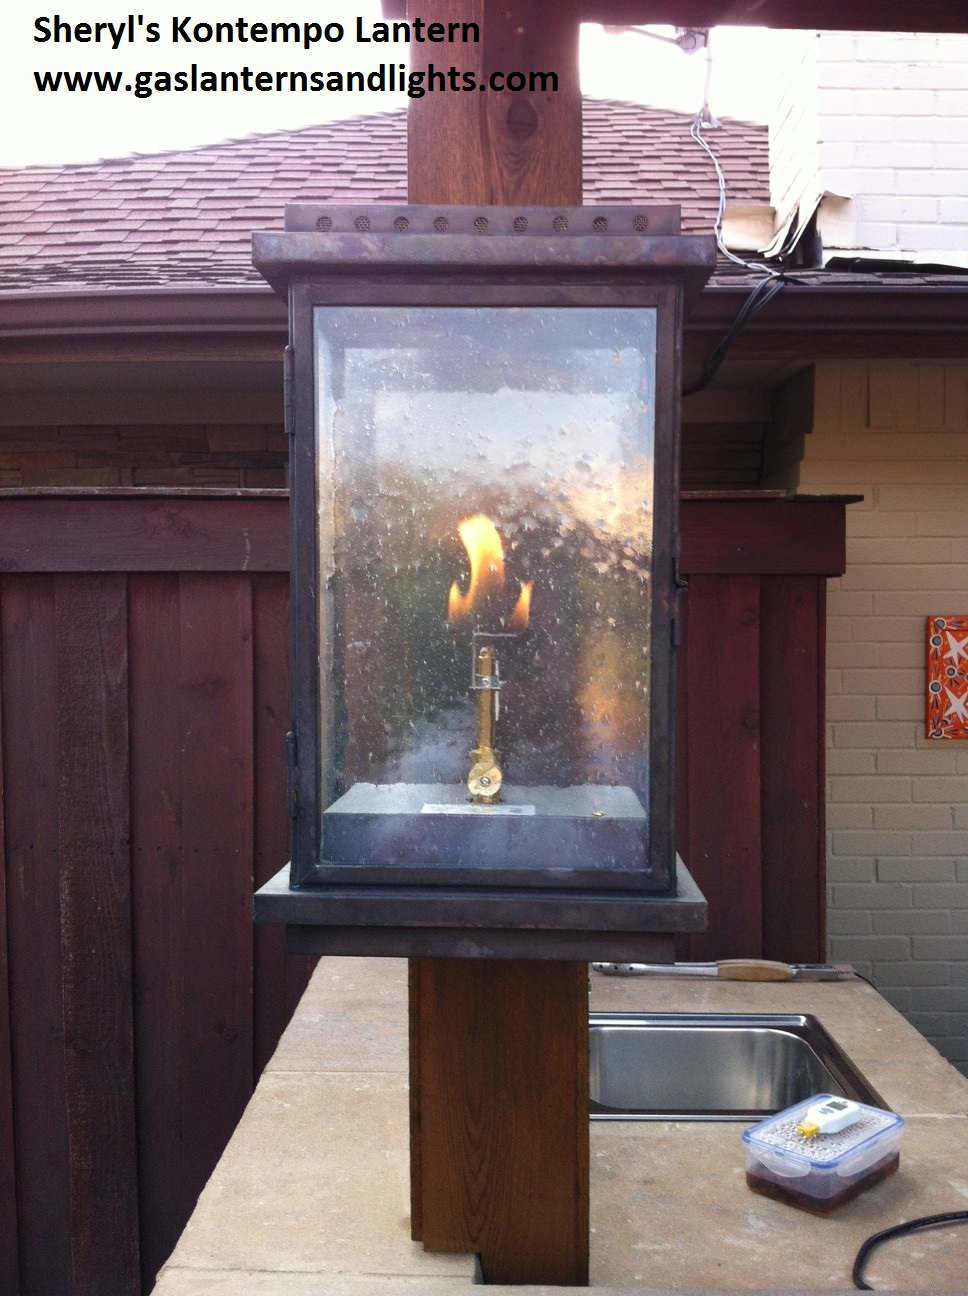 Sheryl's Kontempo Gas Lantern